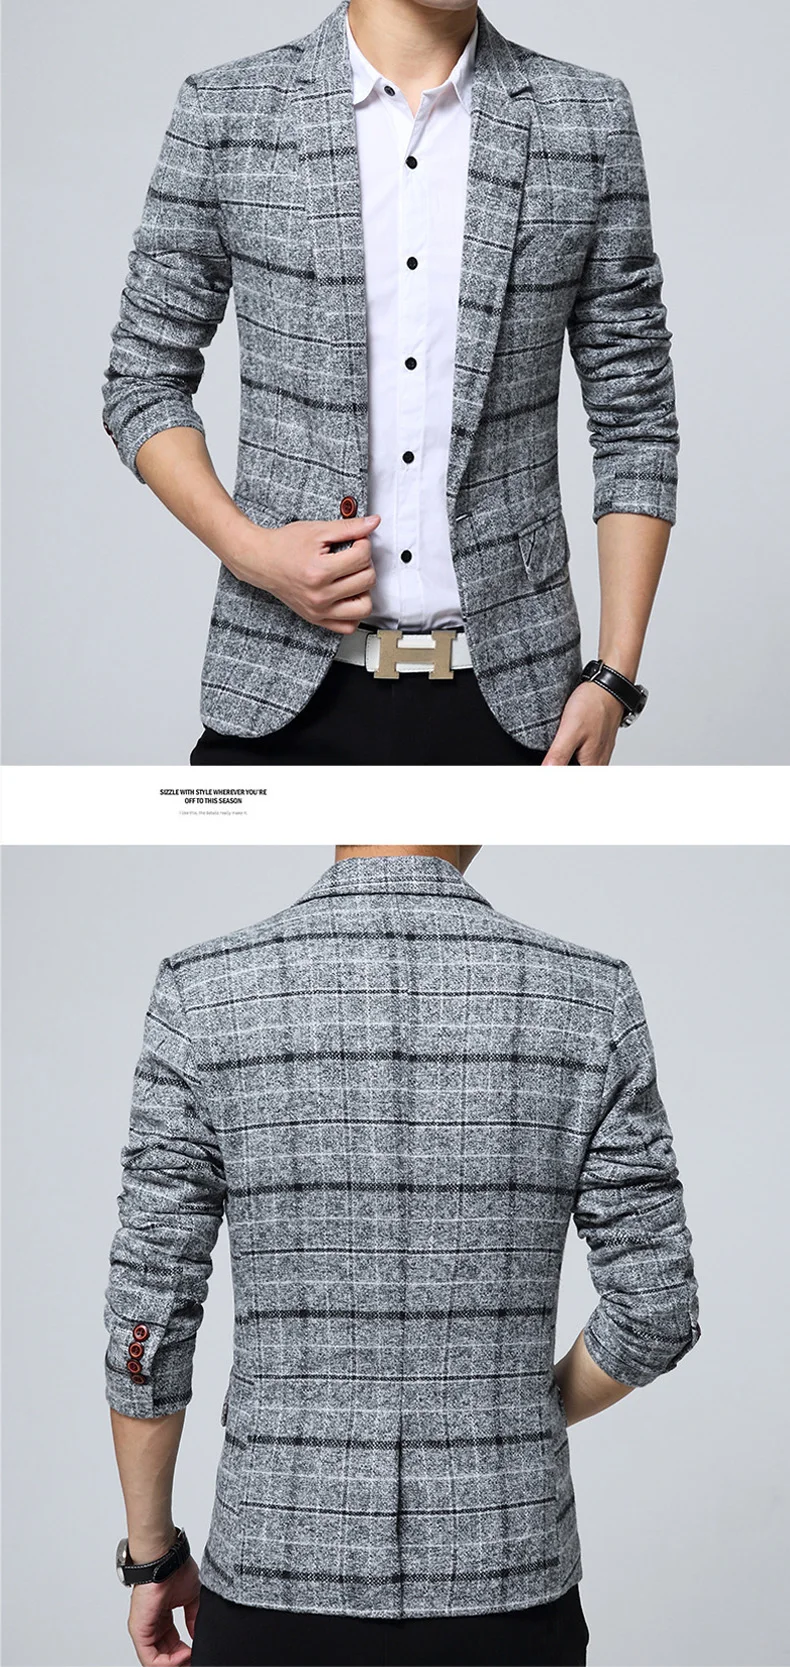 Mwxsd brand Quality Autumn Suit Blazer Men Fashion Slim Male Suits Casual Suit Jacket Masculine Blazer Size M-3XL 15